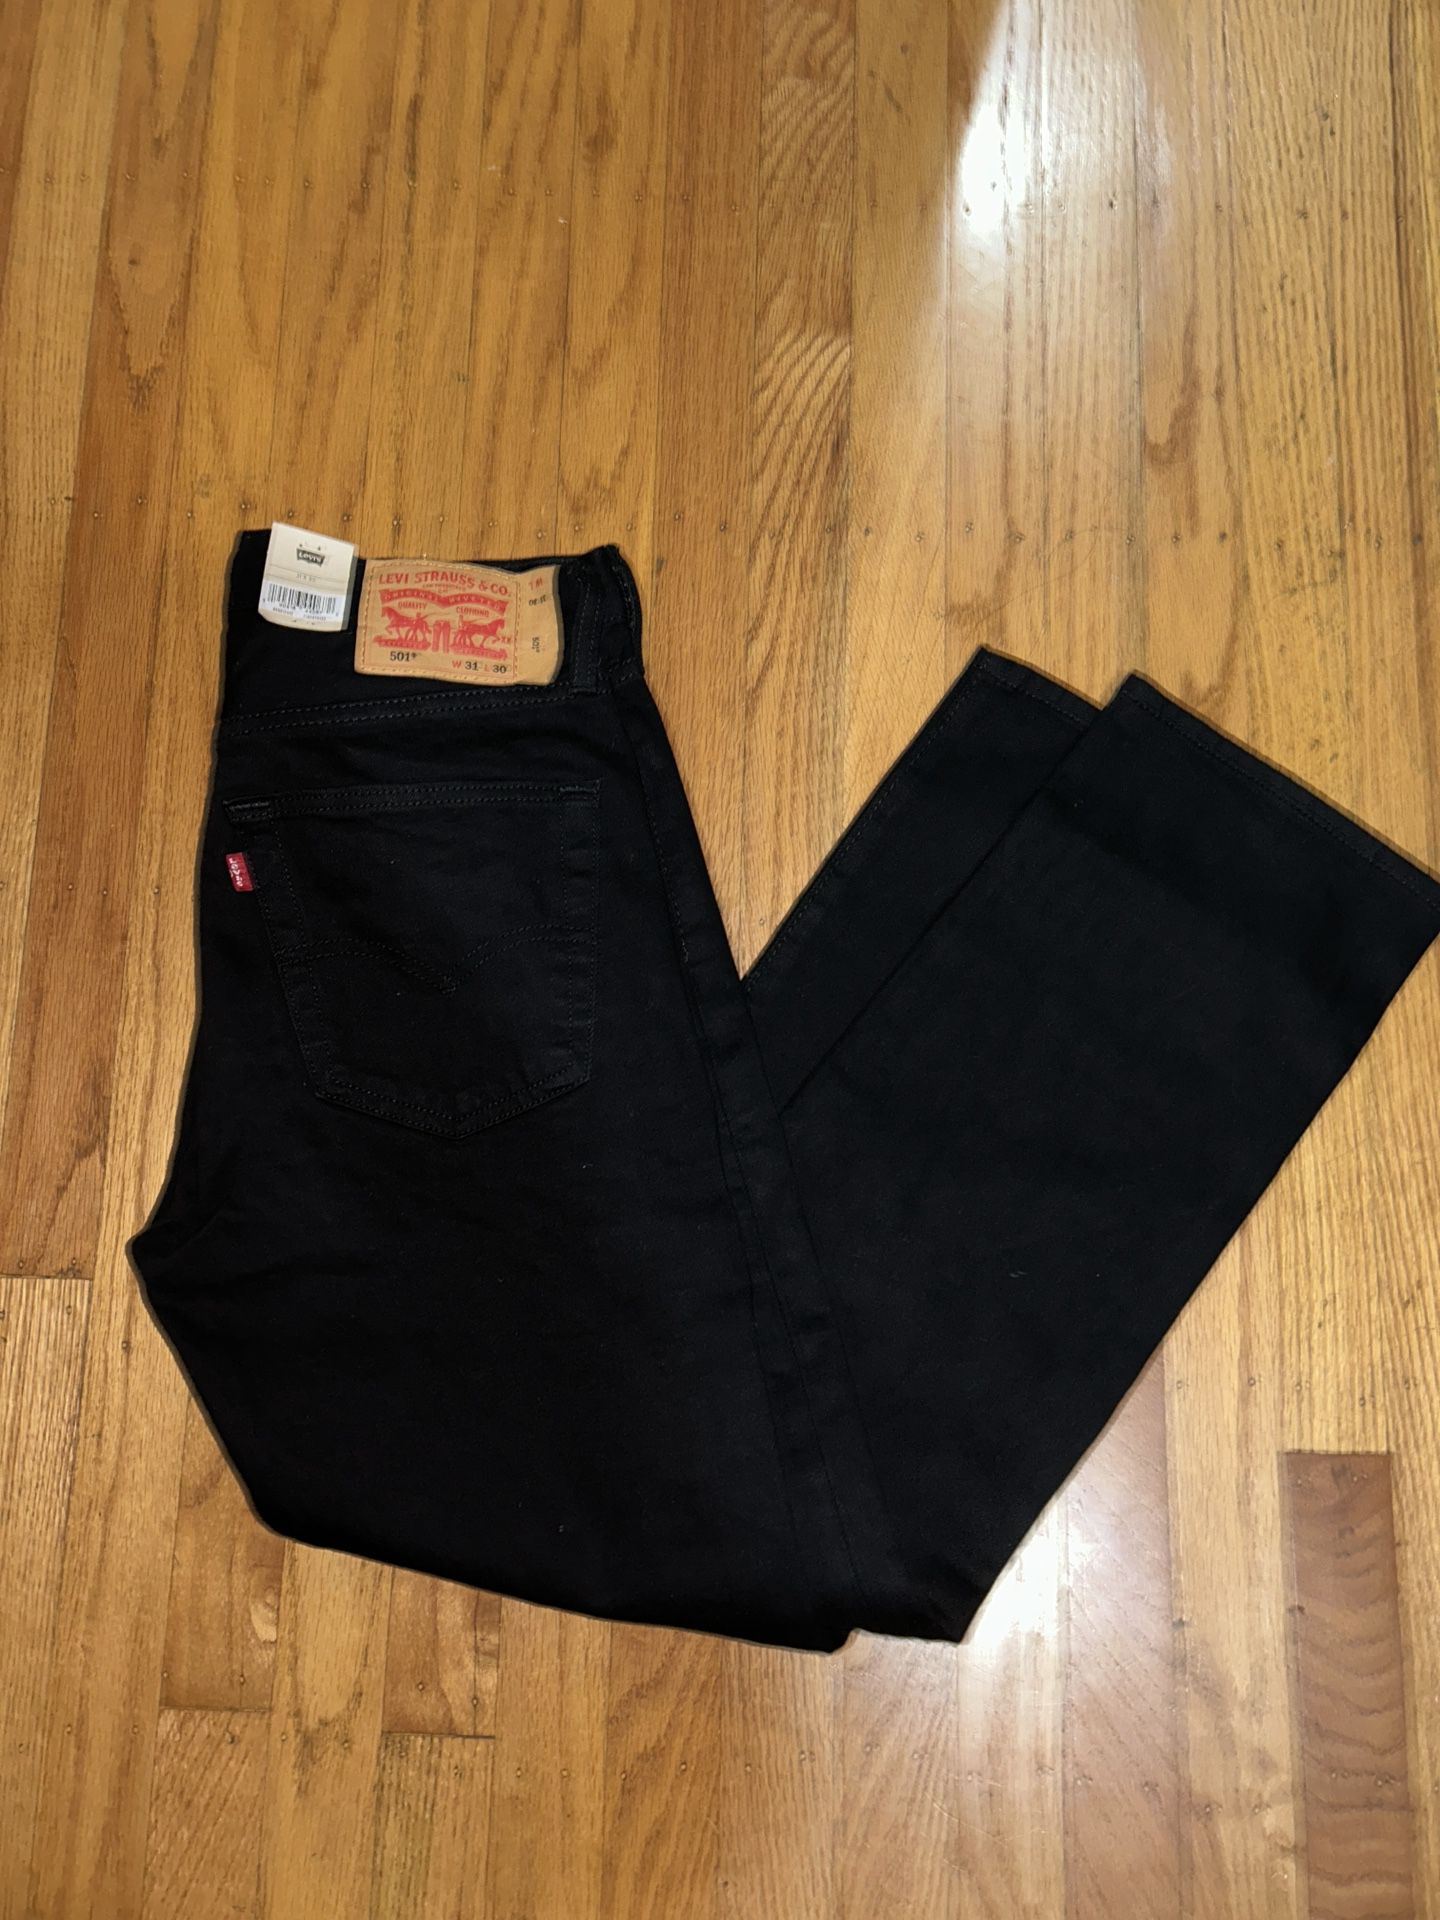 Levi’s 501 Jeans Size 31x30